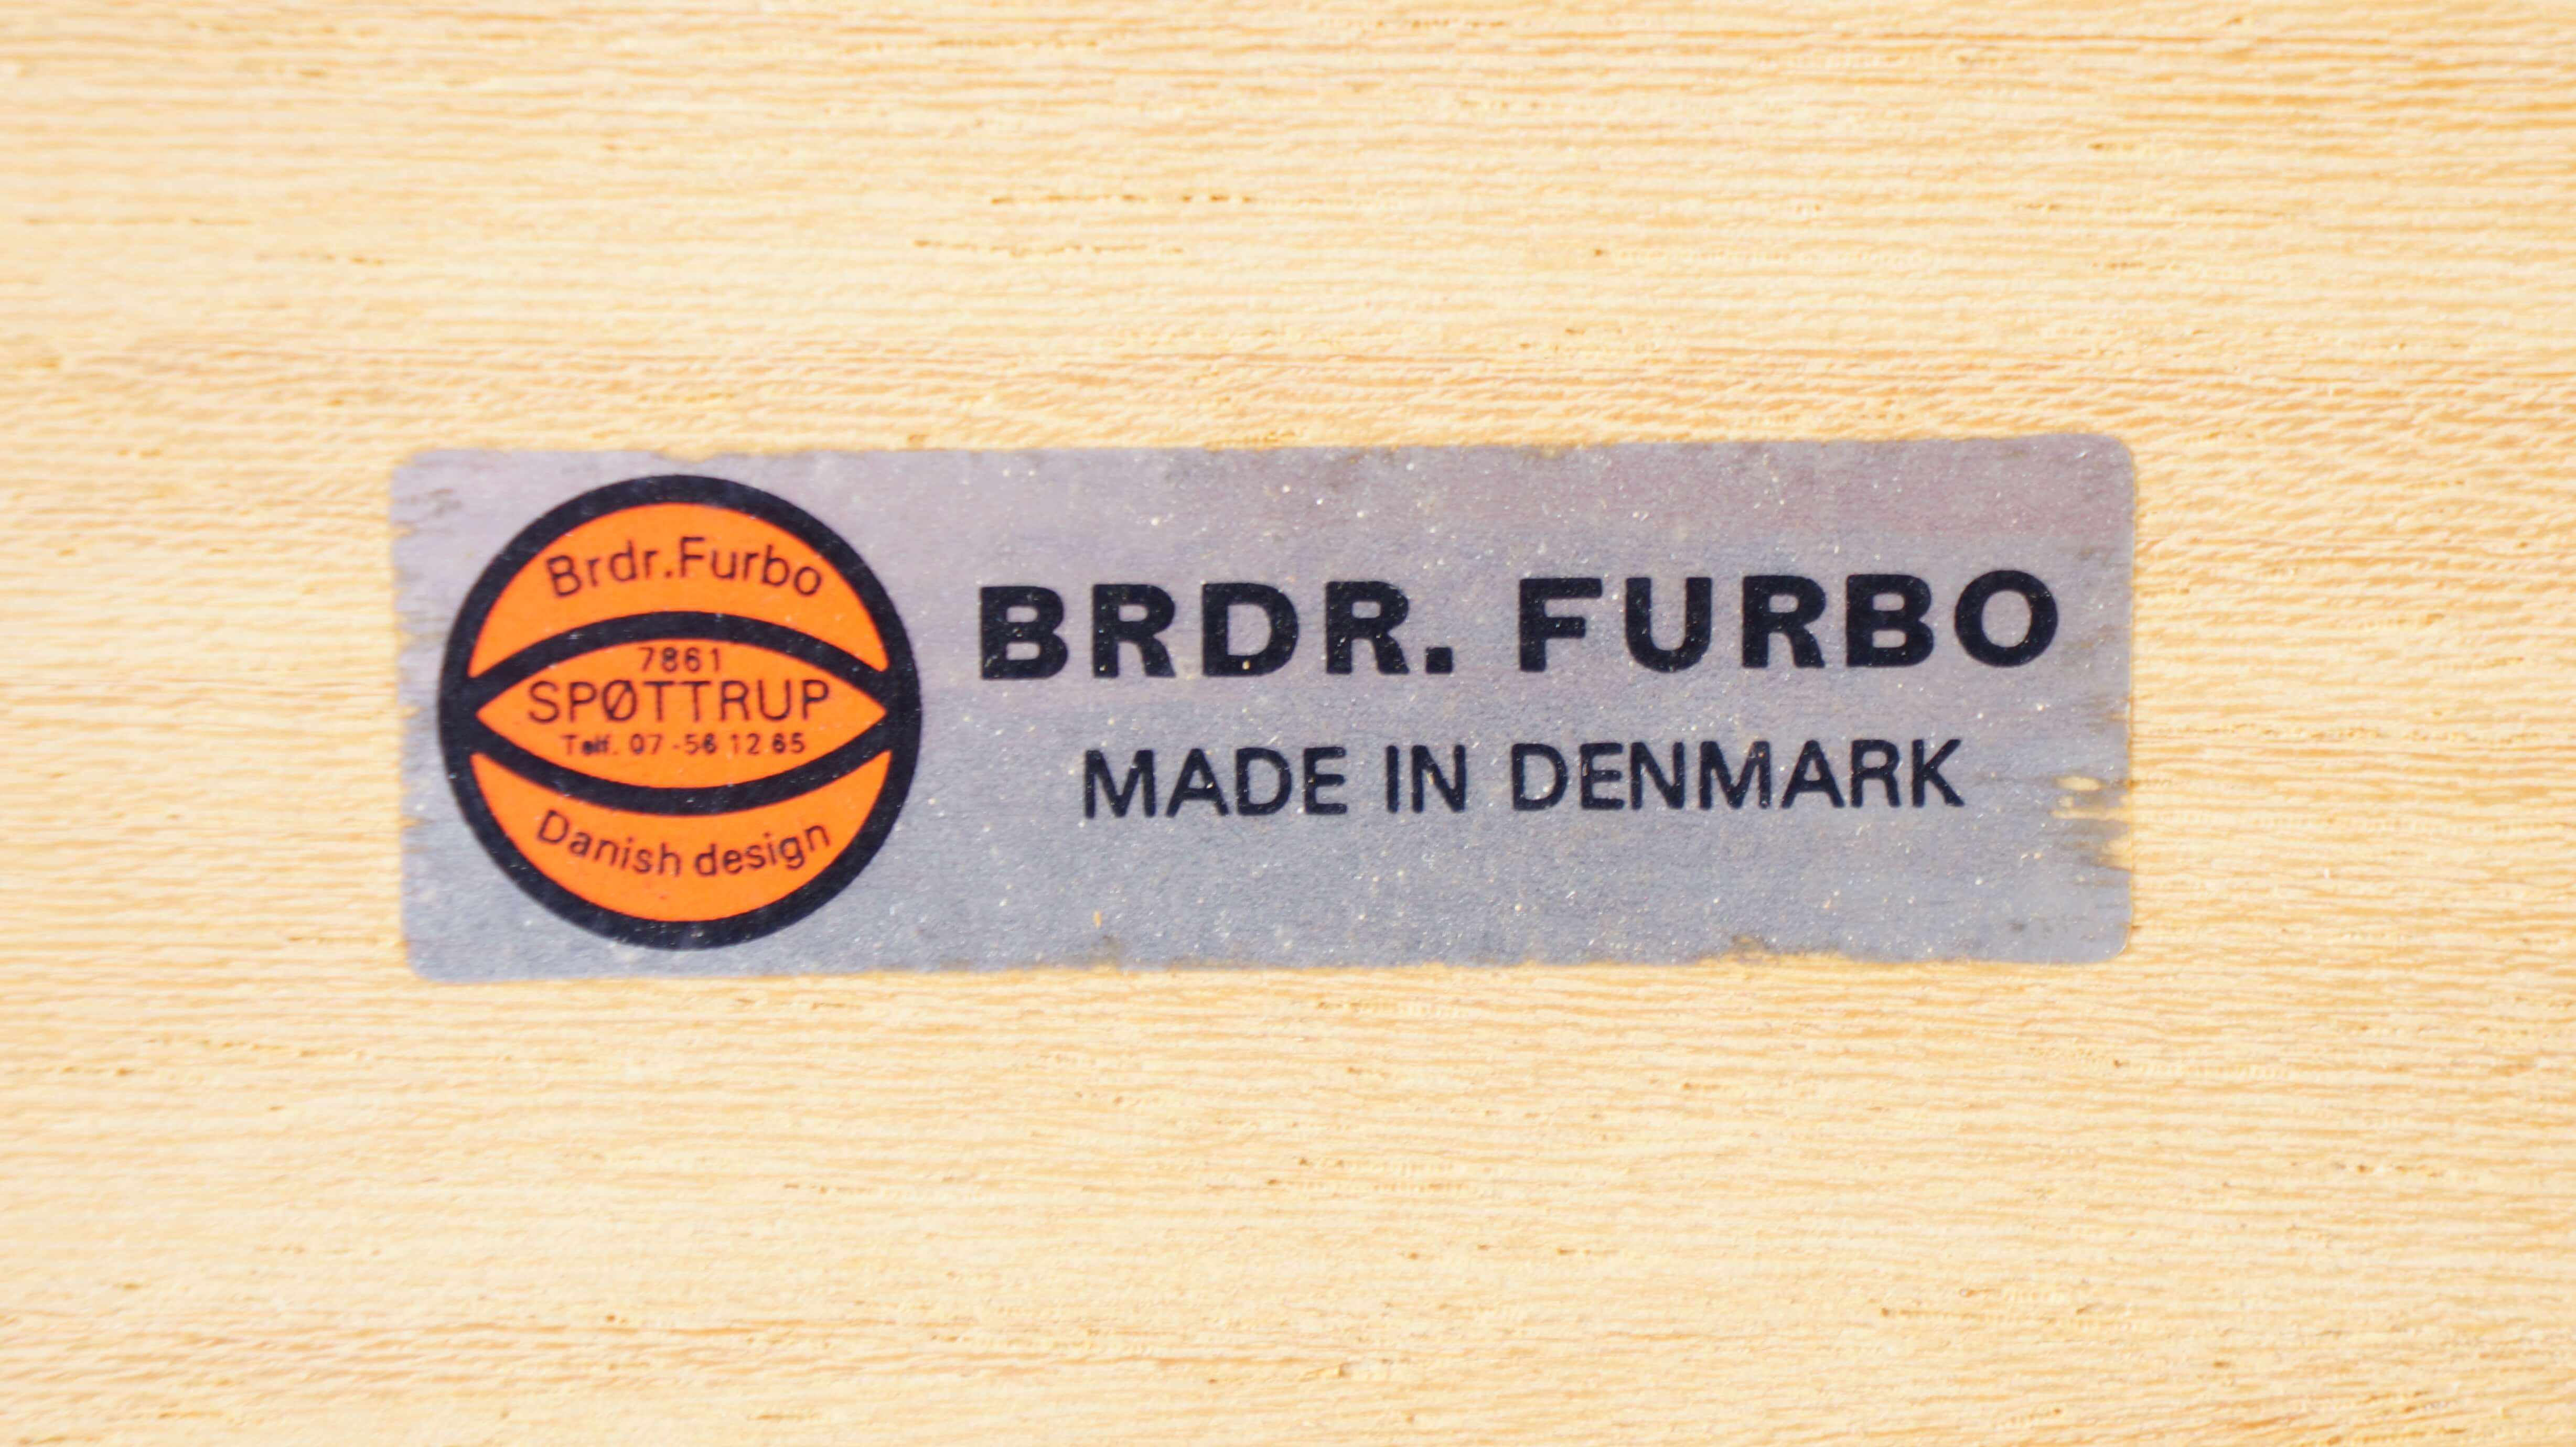 DANMARK MOBLER BRDR FURBO TILE TOP KITCHEN TROLLEY / デンマーク製 チーク タイルトップ キッチン ワゴン